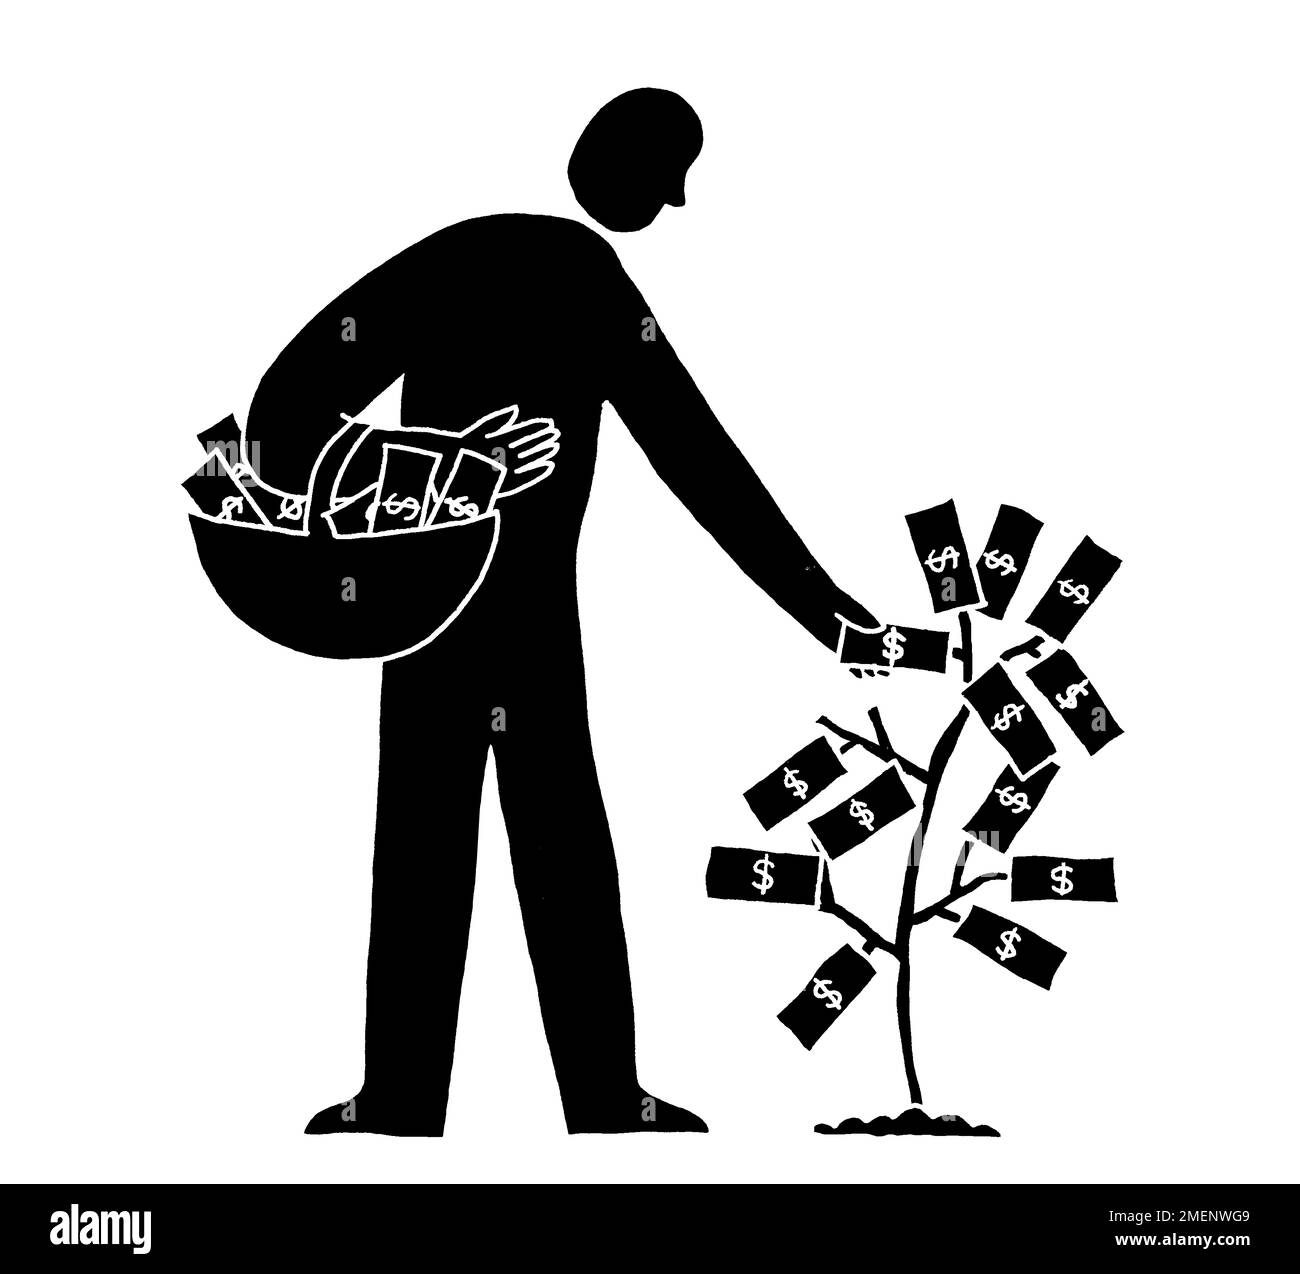 Illustrazione in bianco e nero di soldi che crescono su albero con un uomo che raccoglie le note e le mette in un cestino Foto Stock